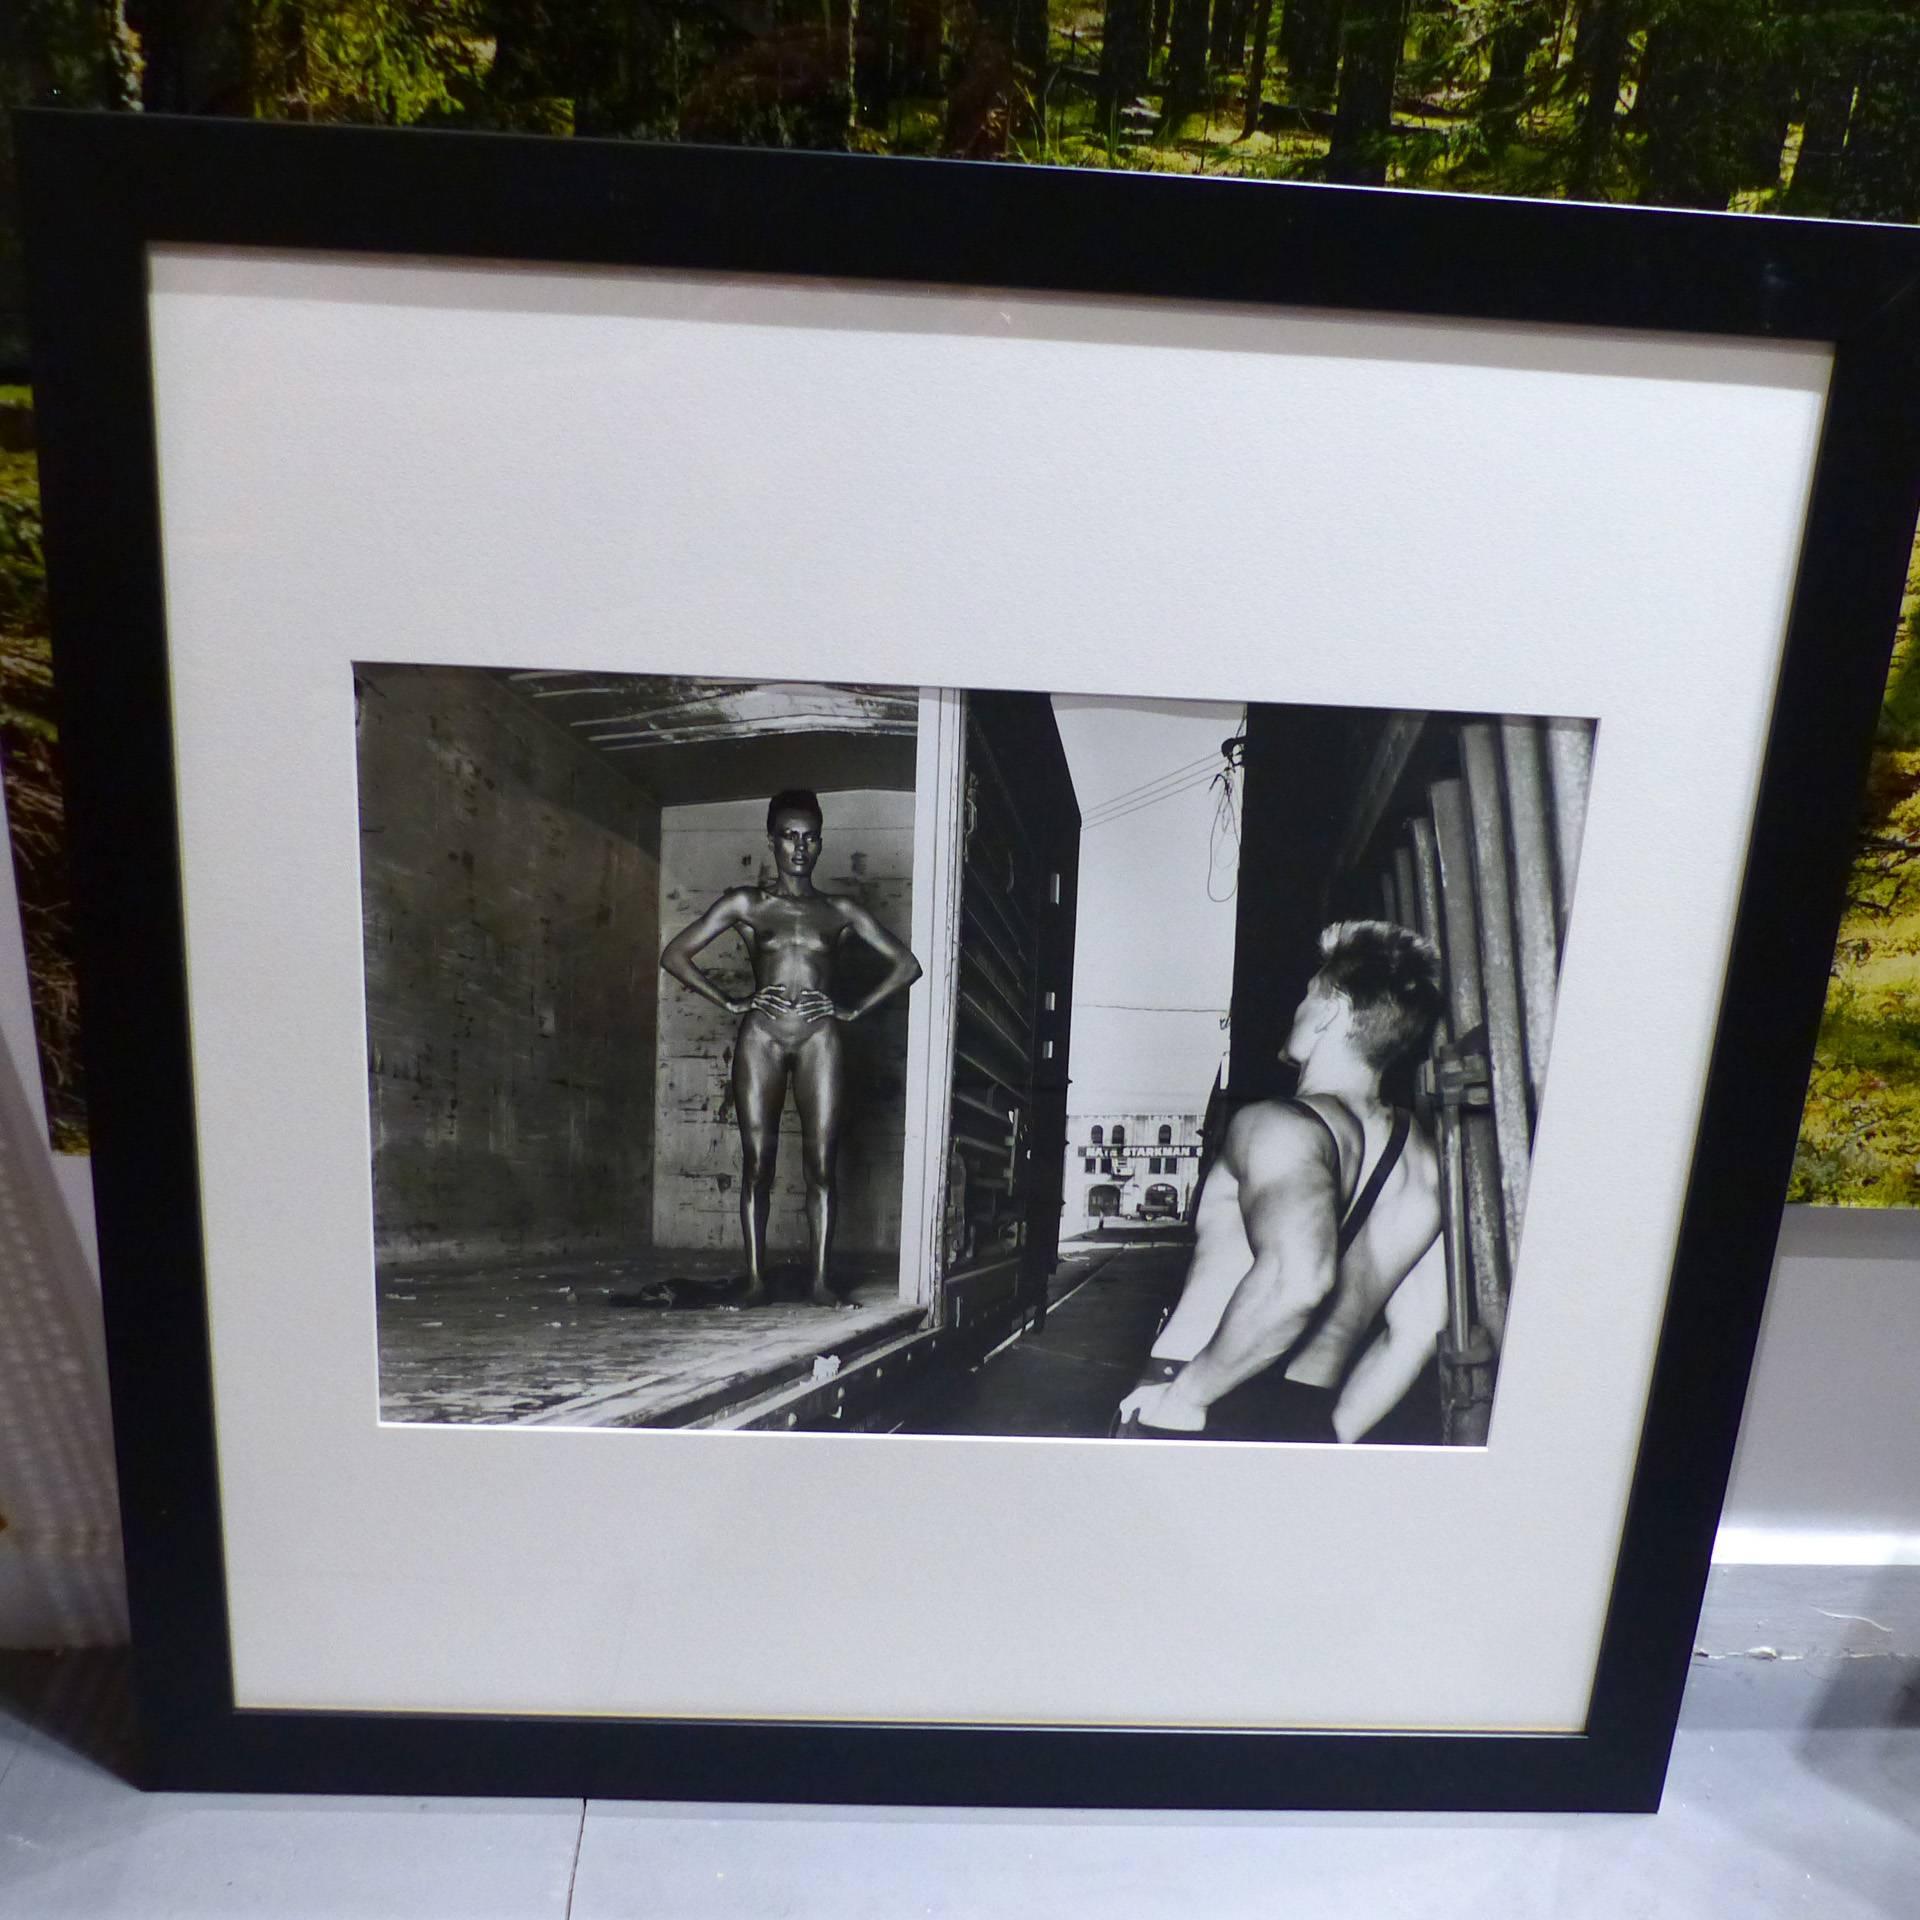 Helmut Newton framed poster, Grace Jones and Dolph Lundgren, Los Angeles 1985.